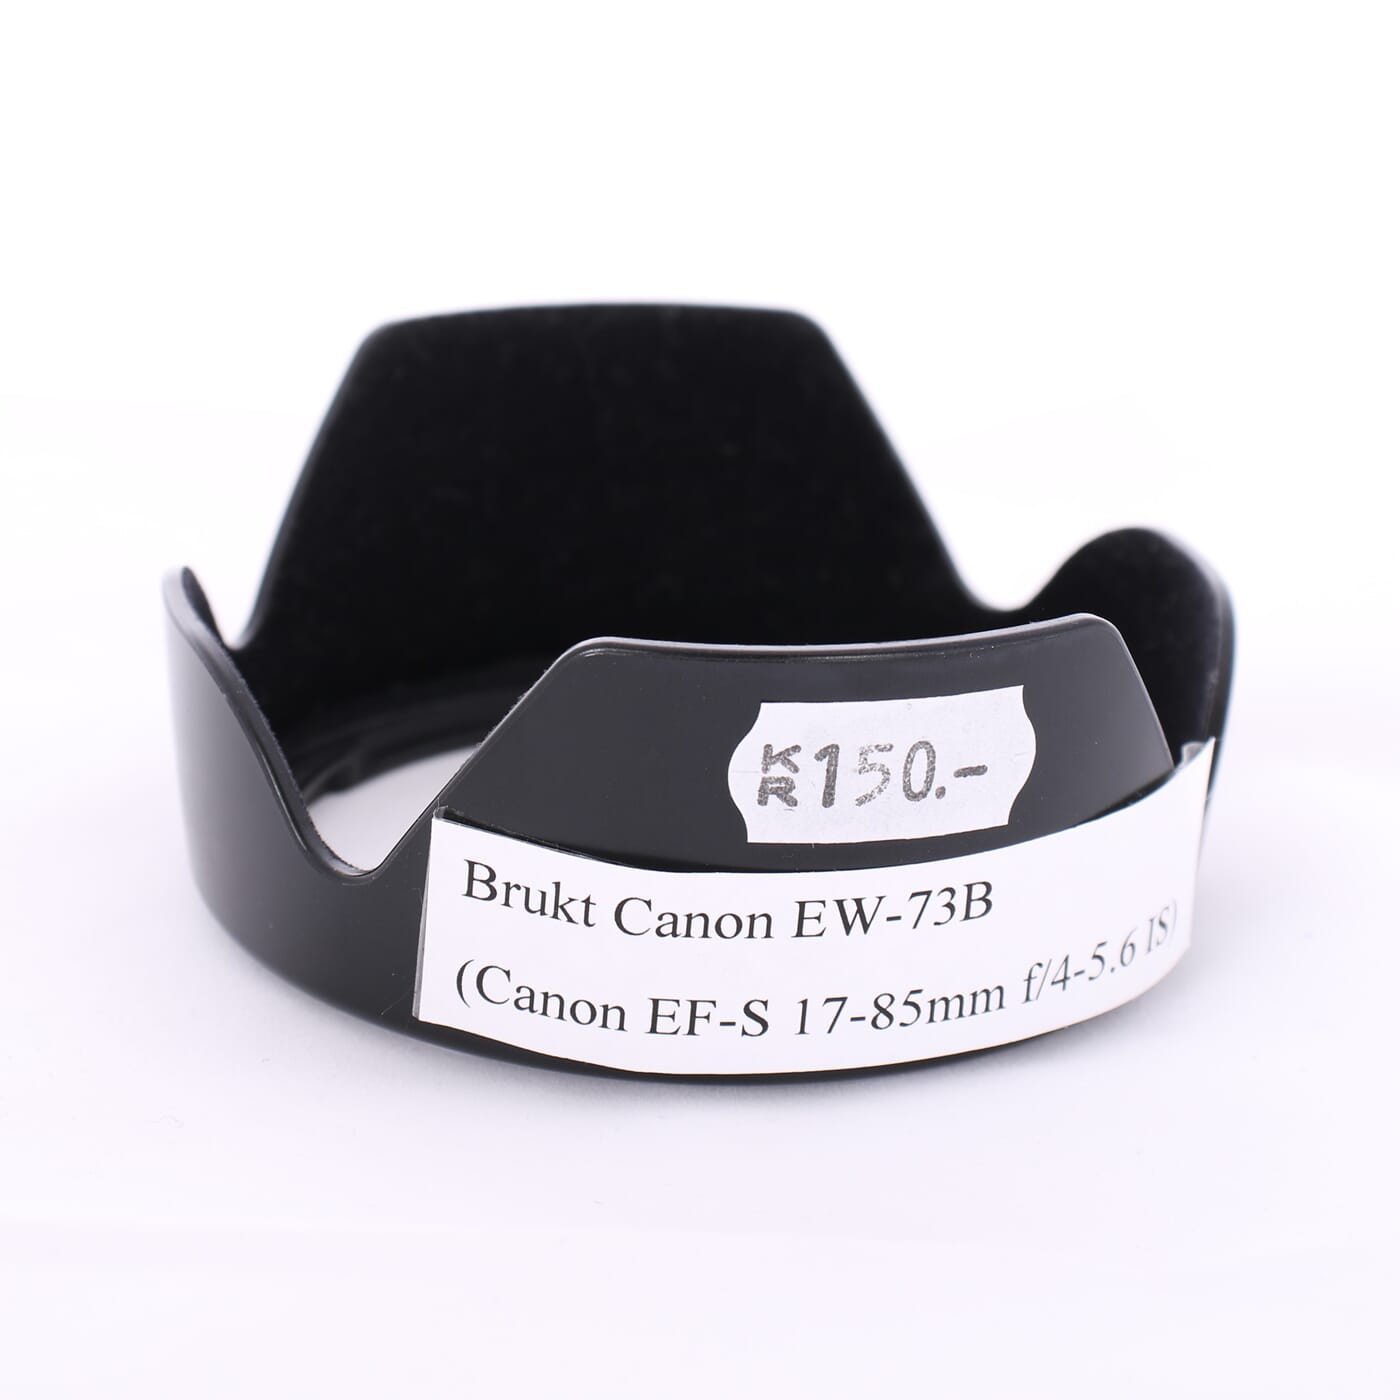 Brukt solblender Canon EW-73B (Canon EF-S 17-85mm f/4-5.6)